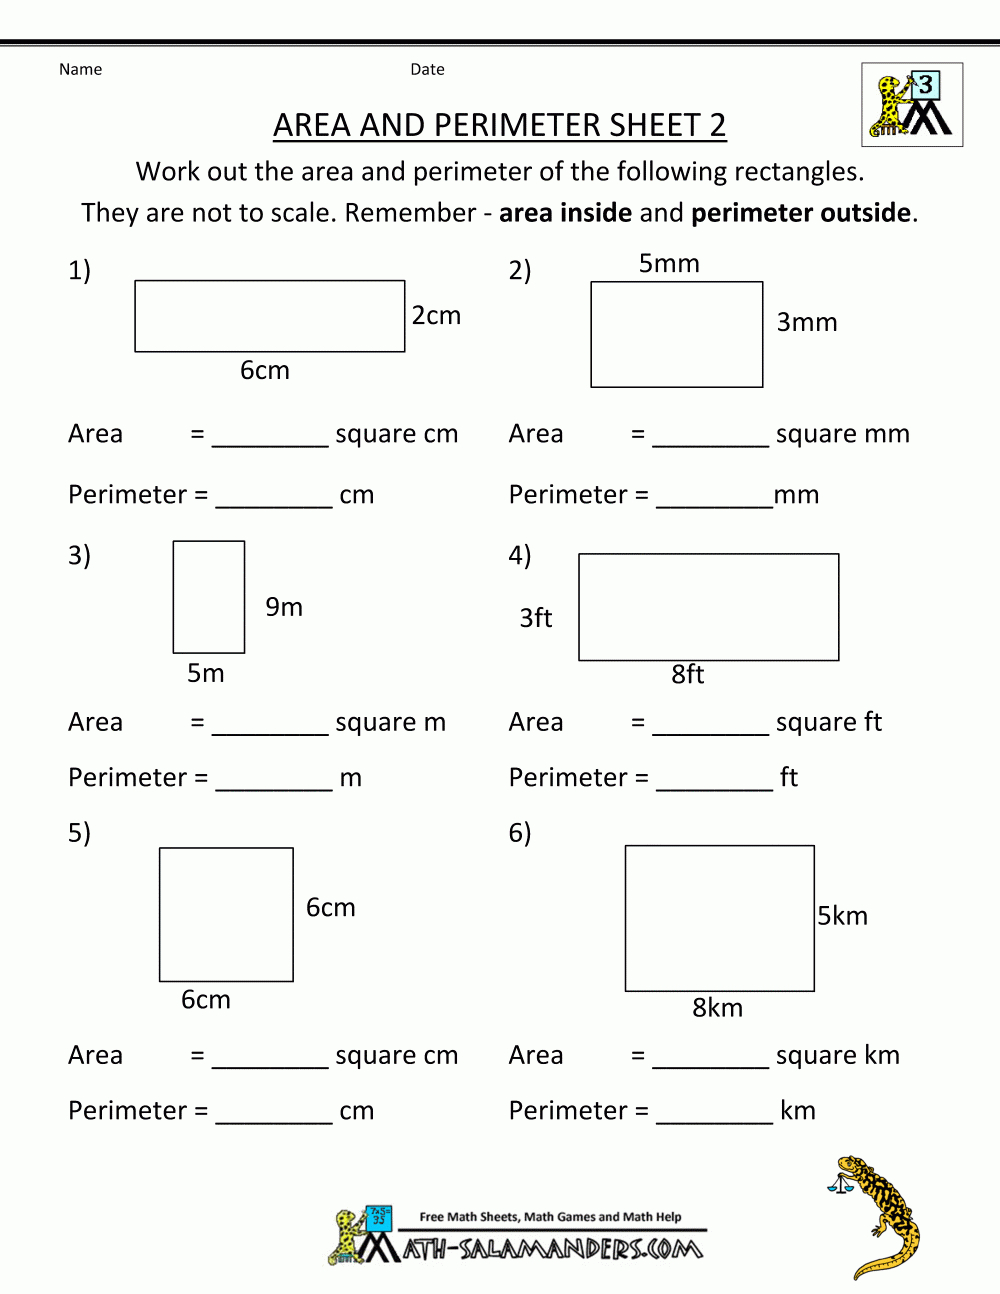 Free Printable Math Worksheets Area Perimeter 2 | Math | Pinterest - Free Printable Time Worksheets For Grade 3